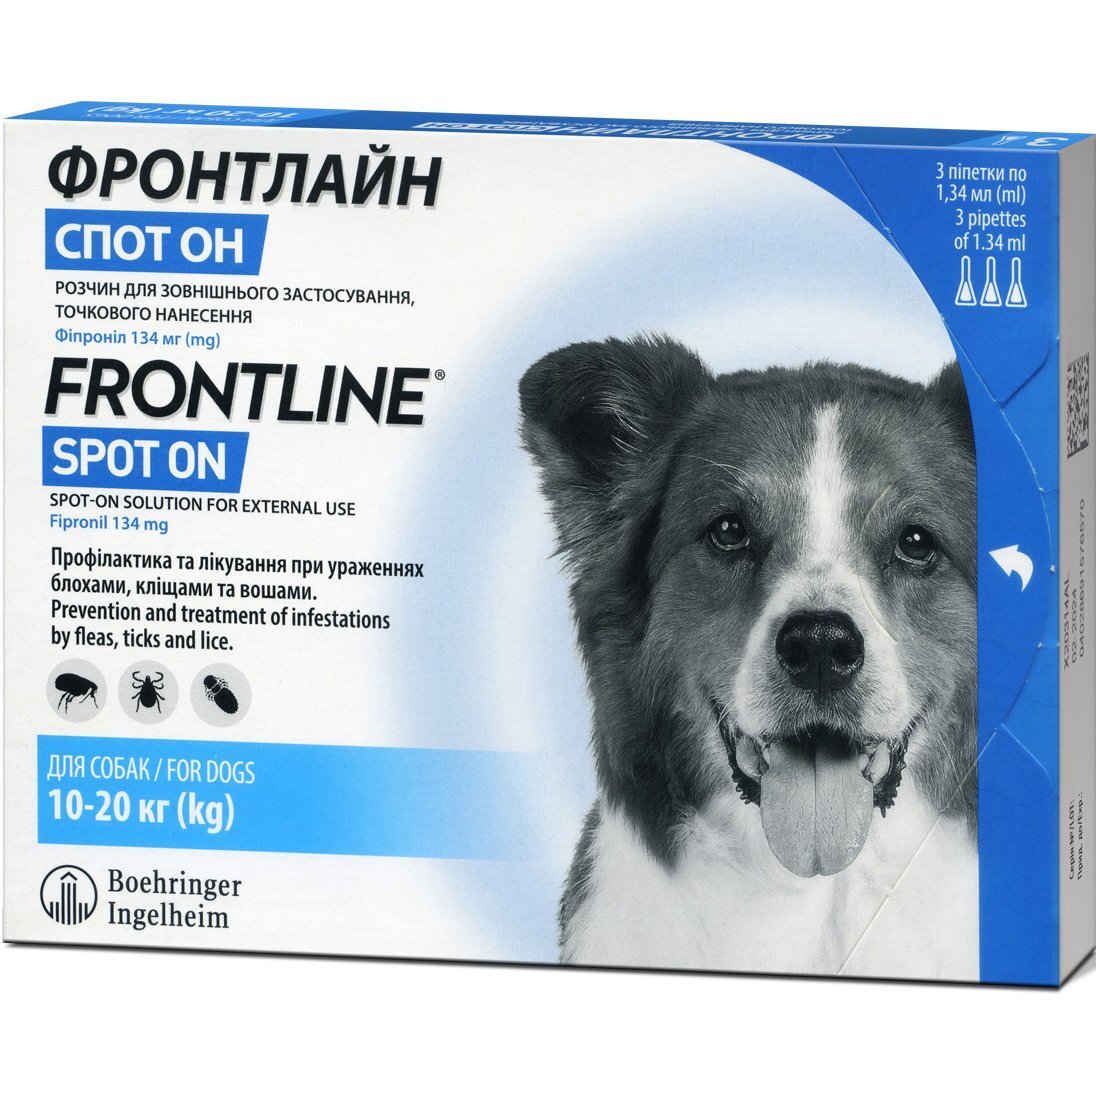 Капли Boehringer Ingelheim Frontline (Фронтлайн) Spot-on Dog M от блох и клещей для собак весом 10-20 кг 3 шт фото 1